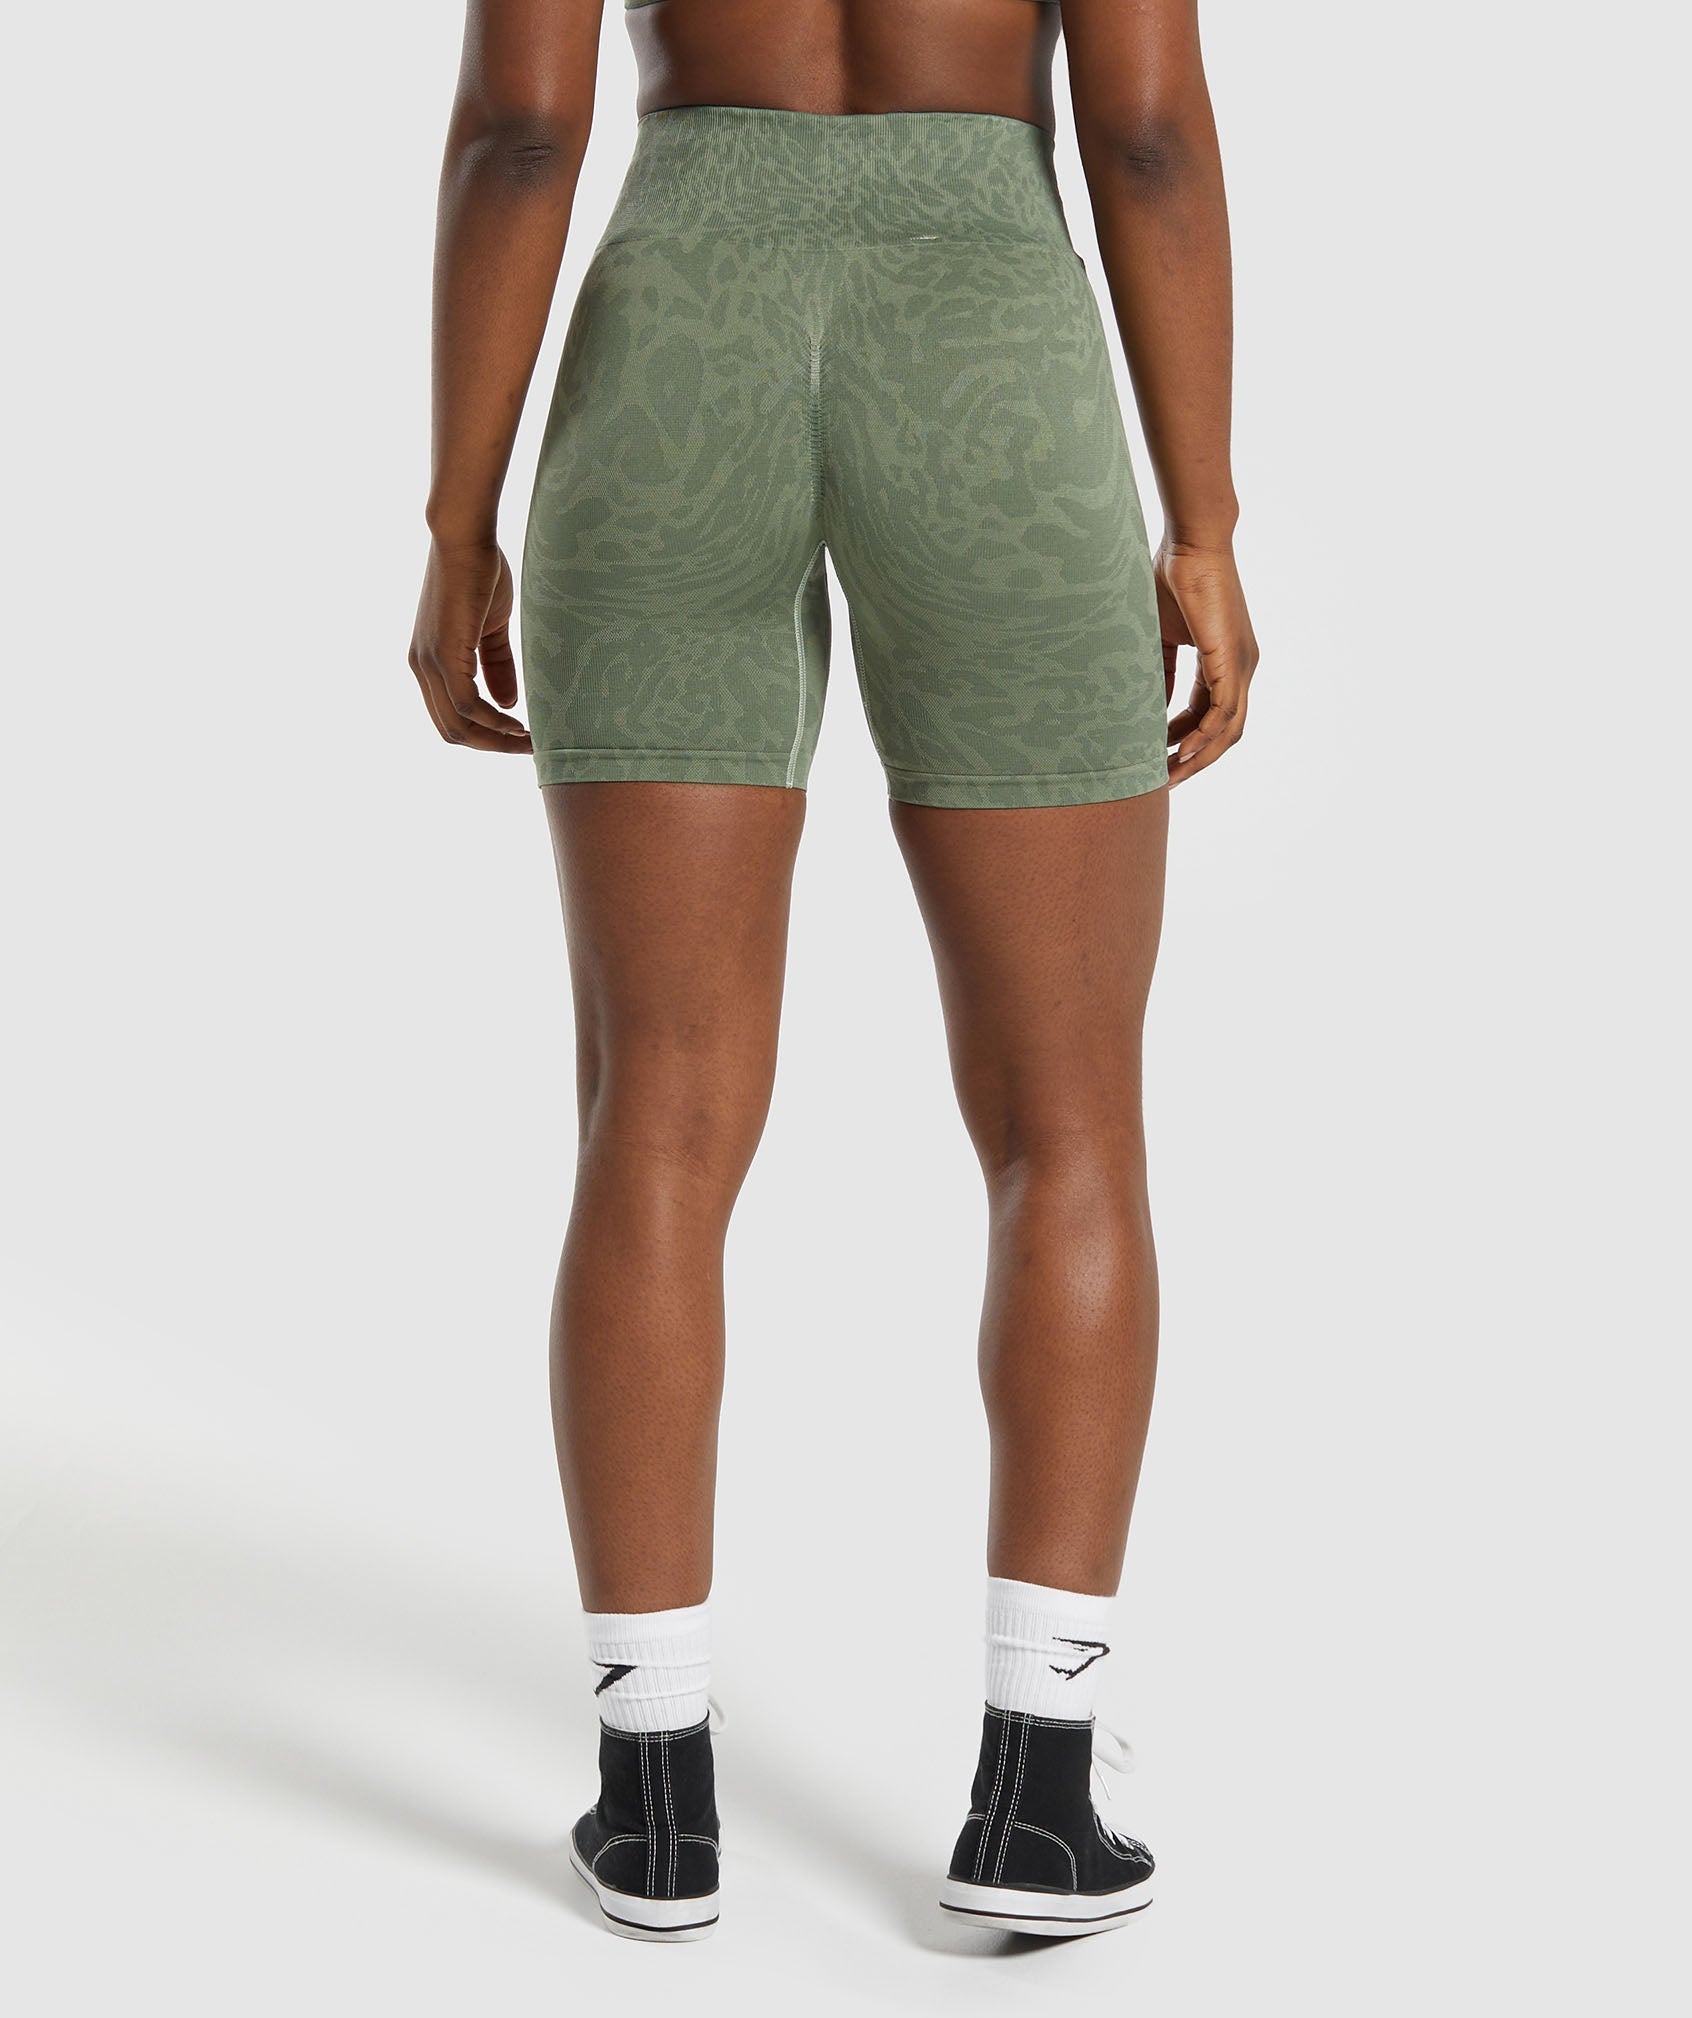 Adapt Safari Tight Shorts